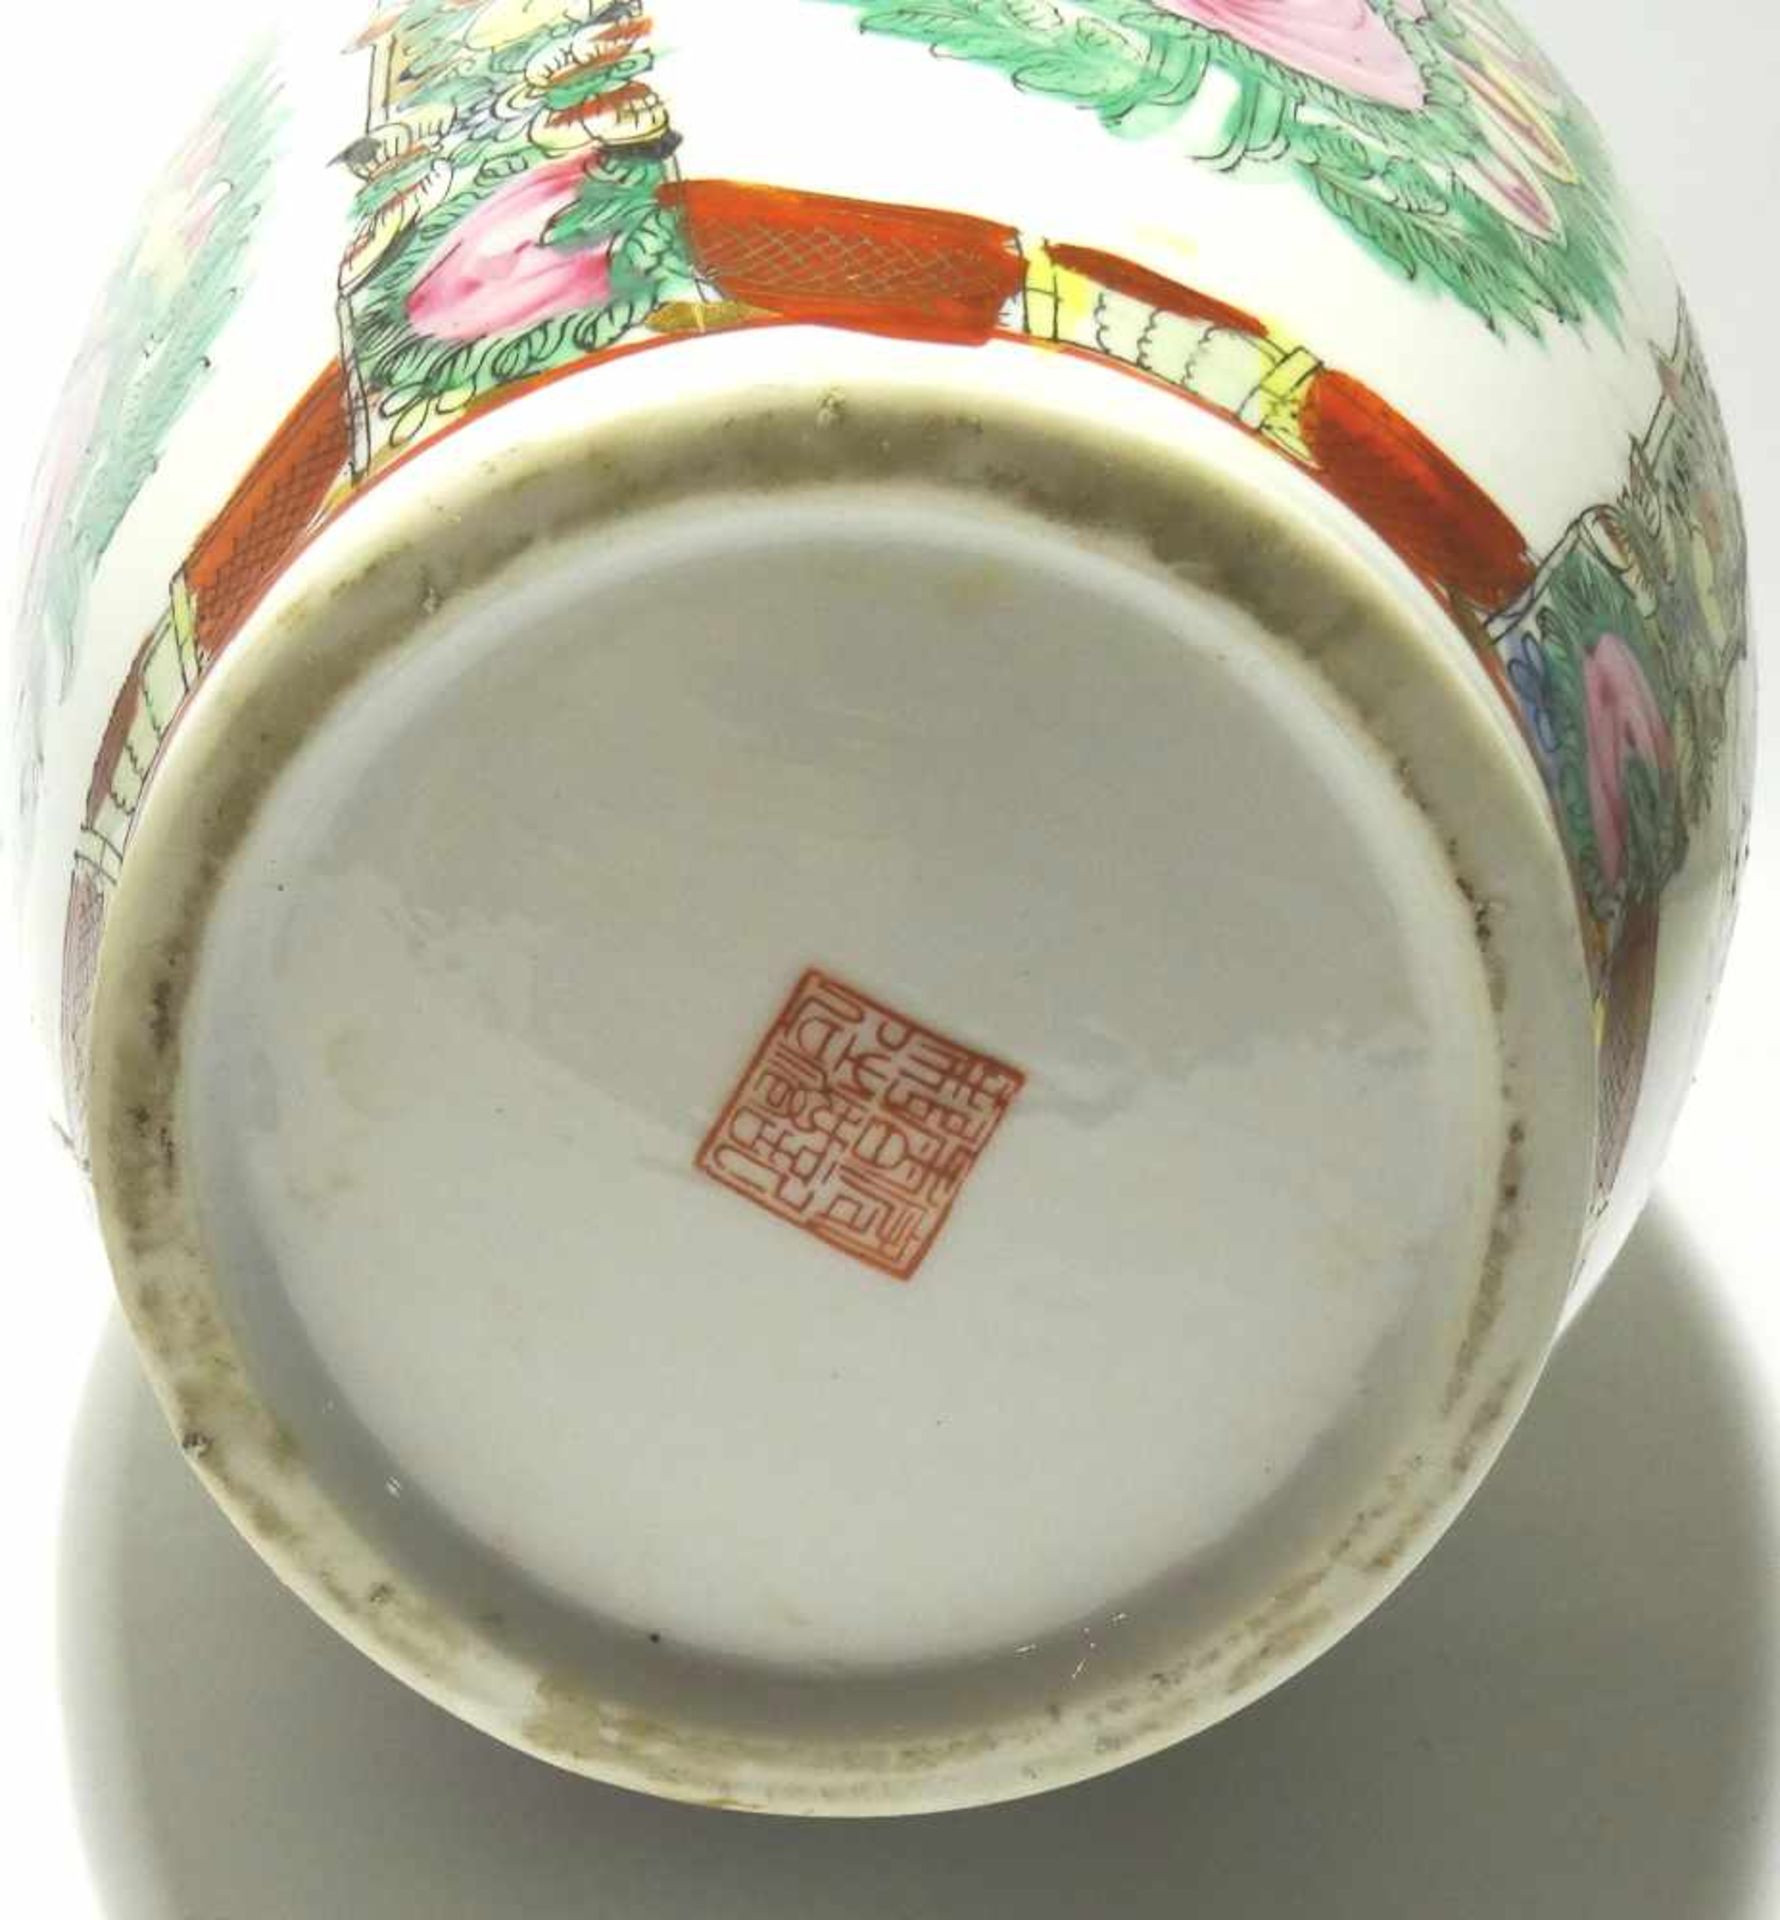 Vase auch Bodenvase, Höhe ca. 42cm, Durchmesser am Bauch ca. 20cm, signiert - Bild 3 aus 3